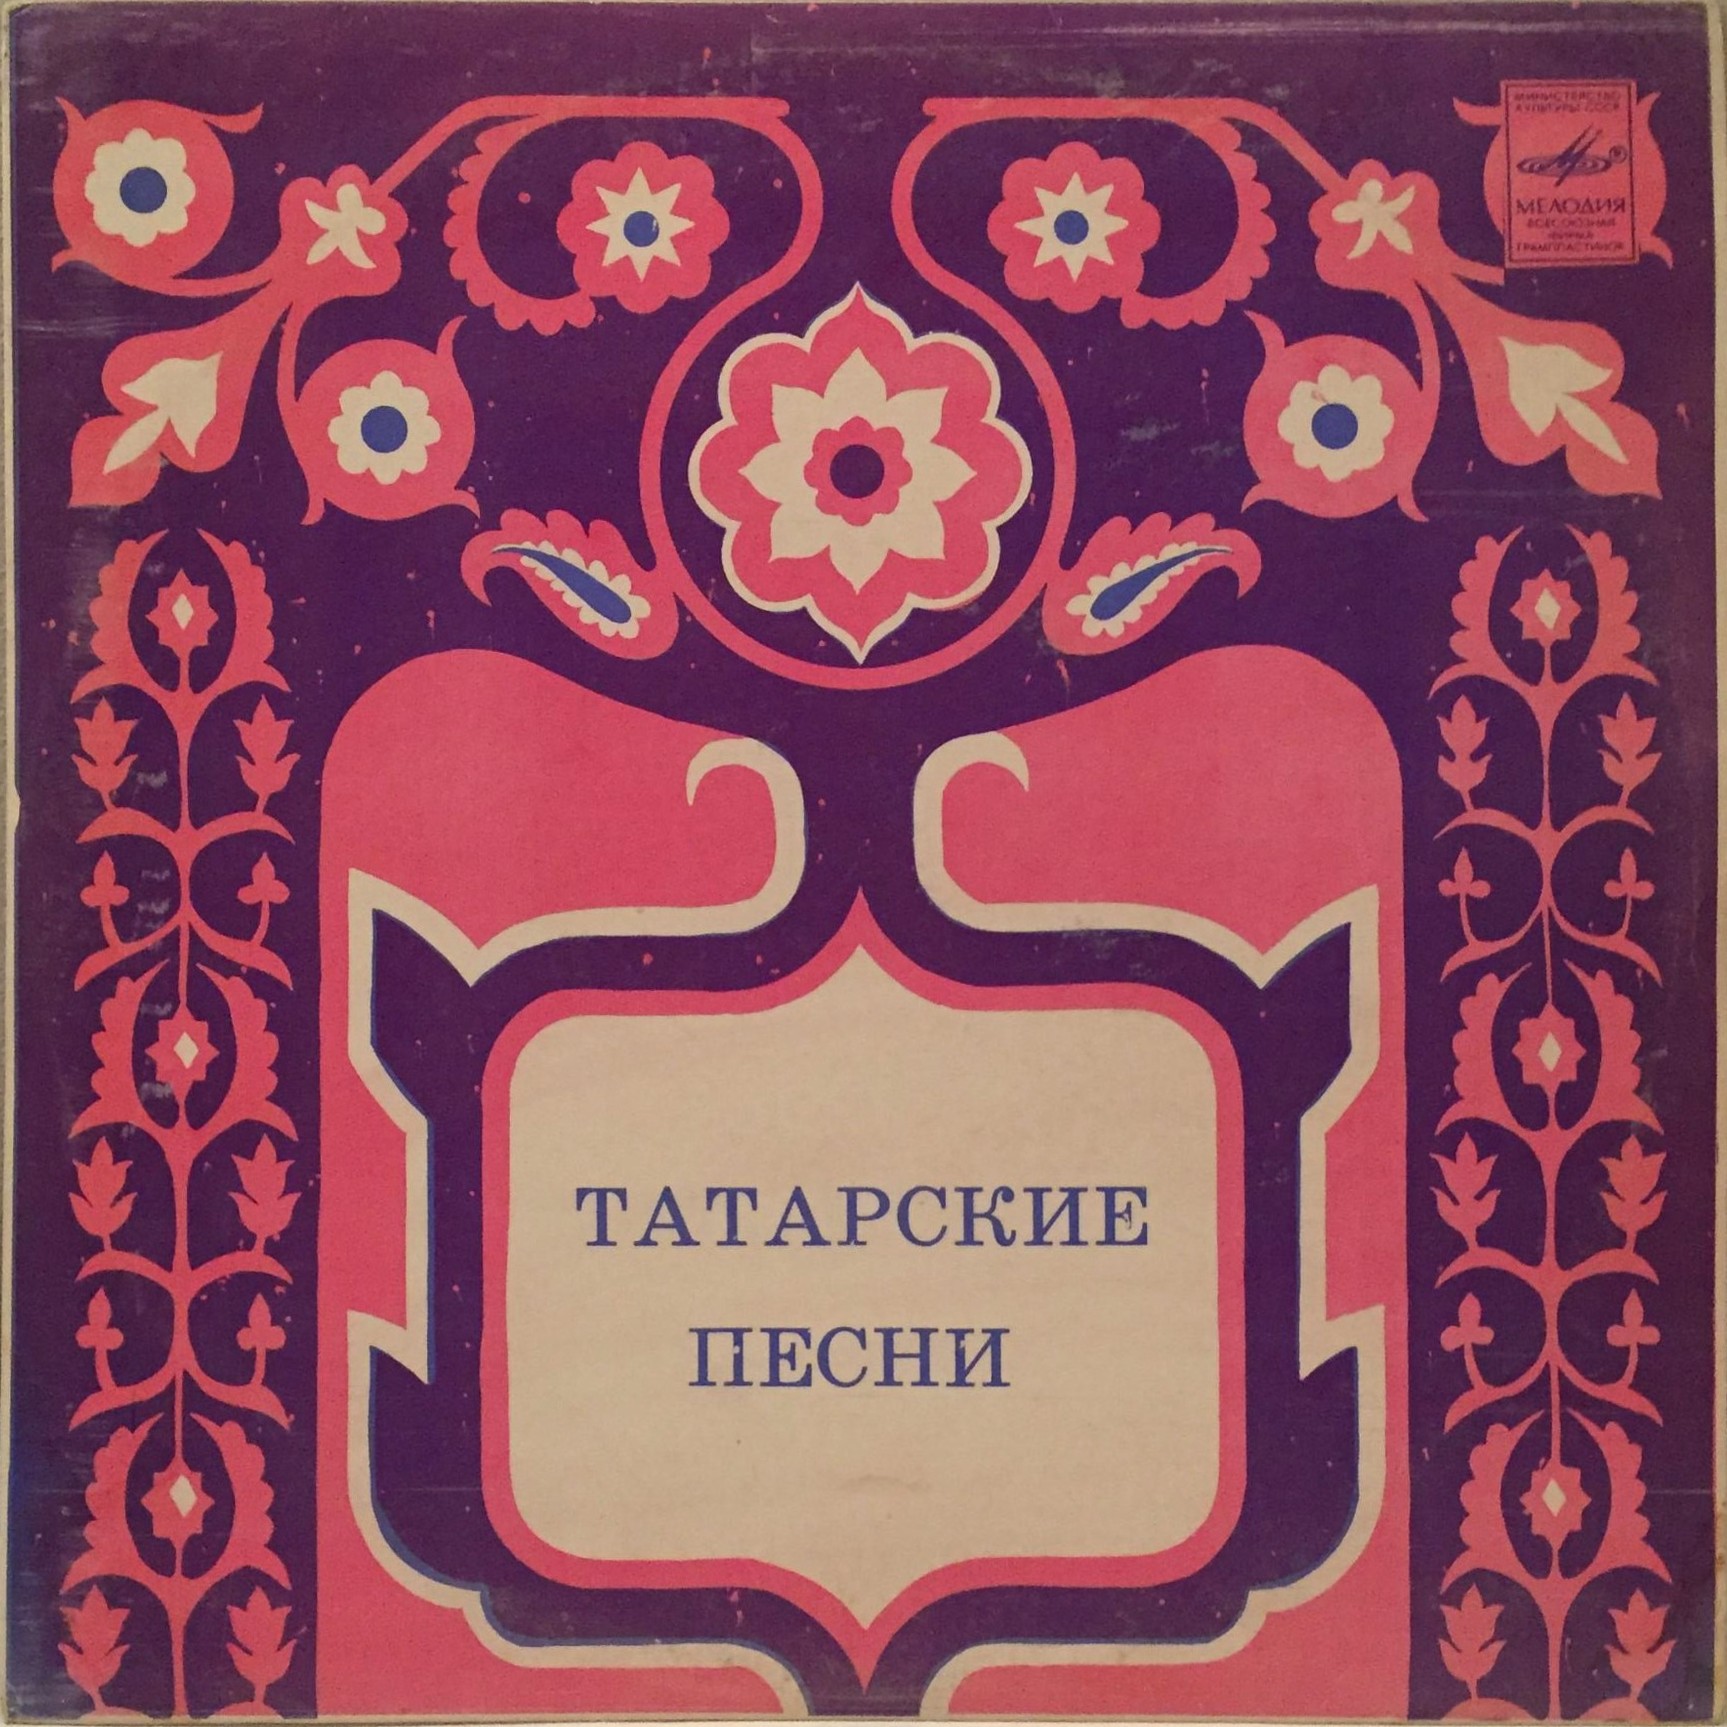 Ильгам ШАКИРОВ: «Татарские песни»